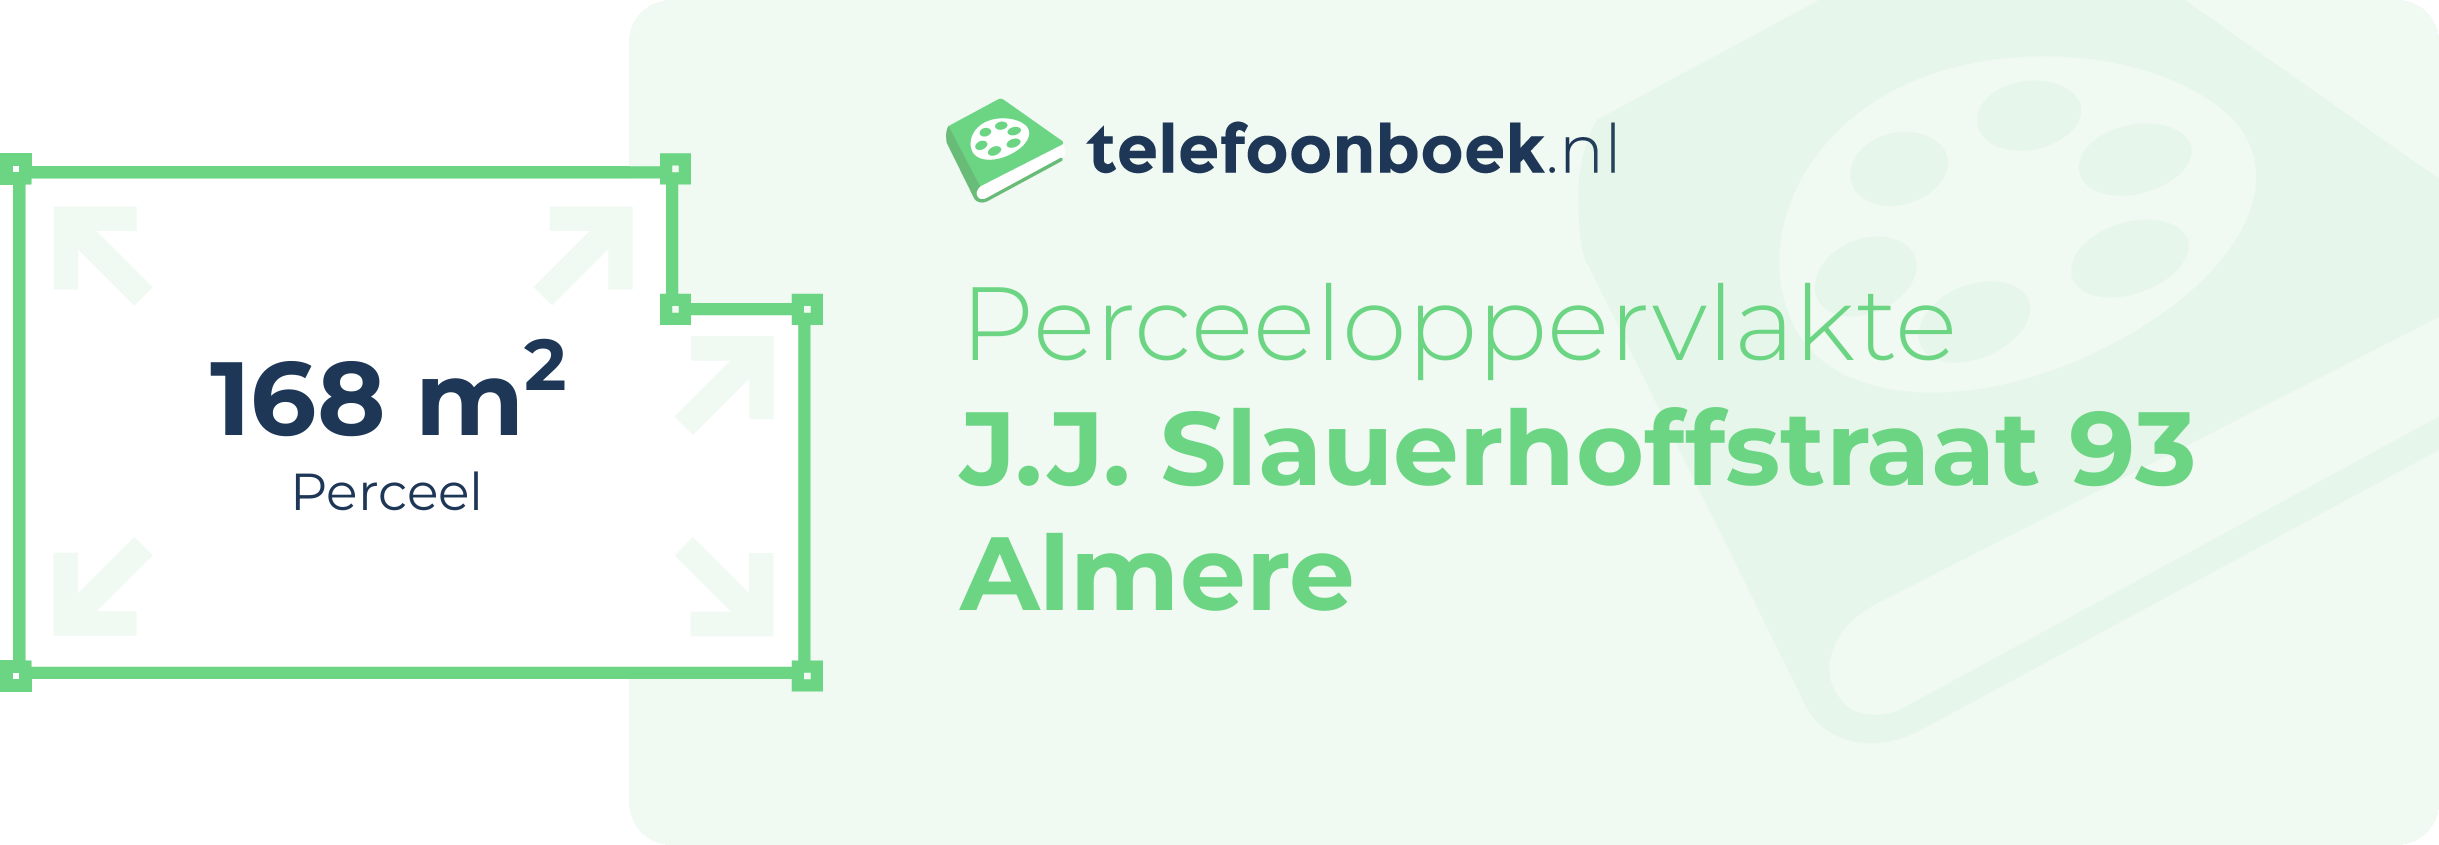 Perceeloppervlakte J.J. Slauerhoffstraat 93 Almere